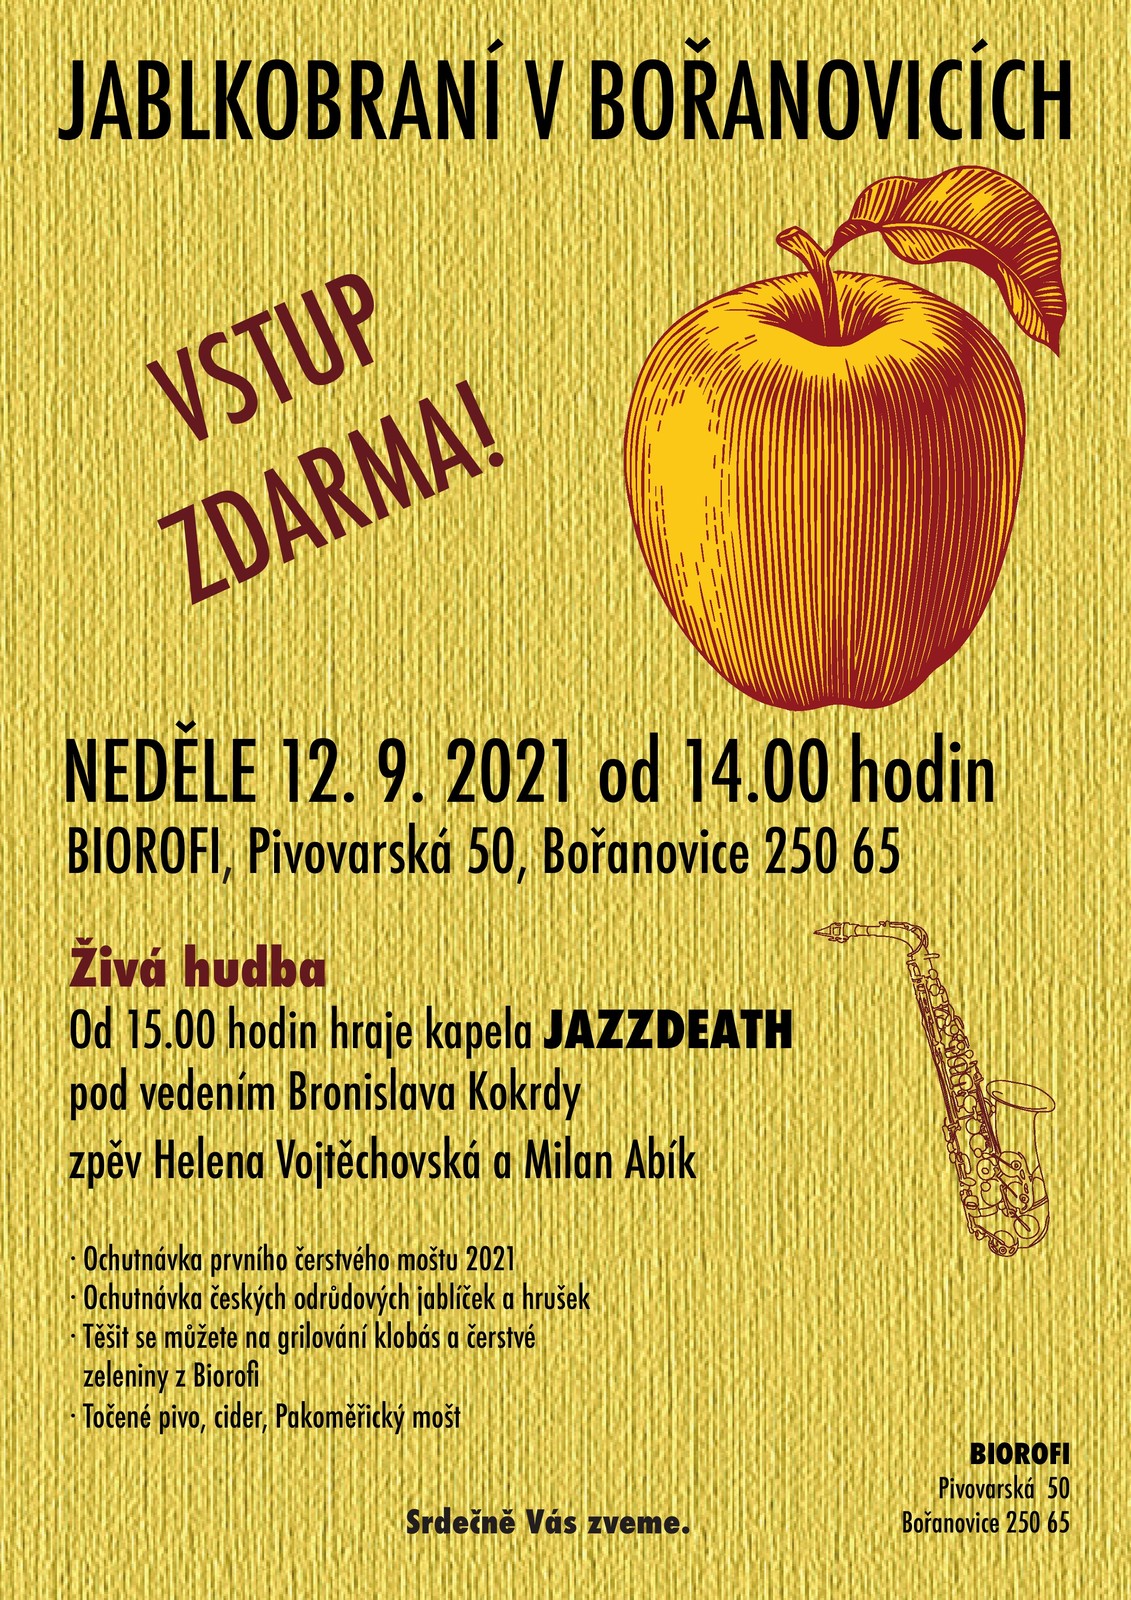 Jablkobraní v Bořanovicích 2021_BIOROFI.jpg